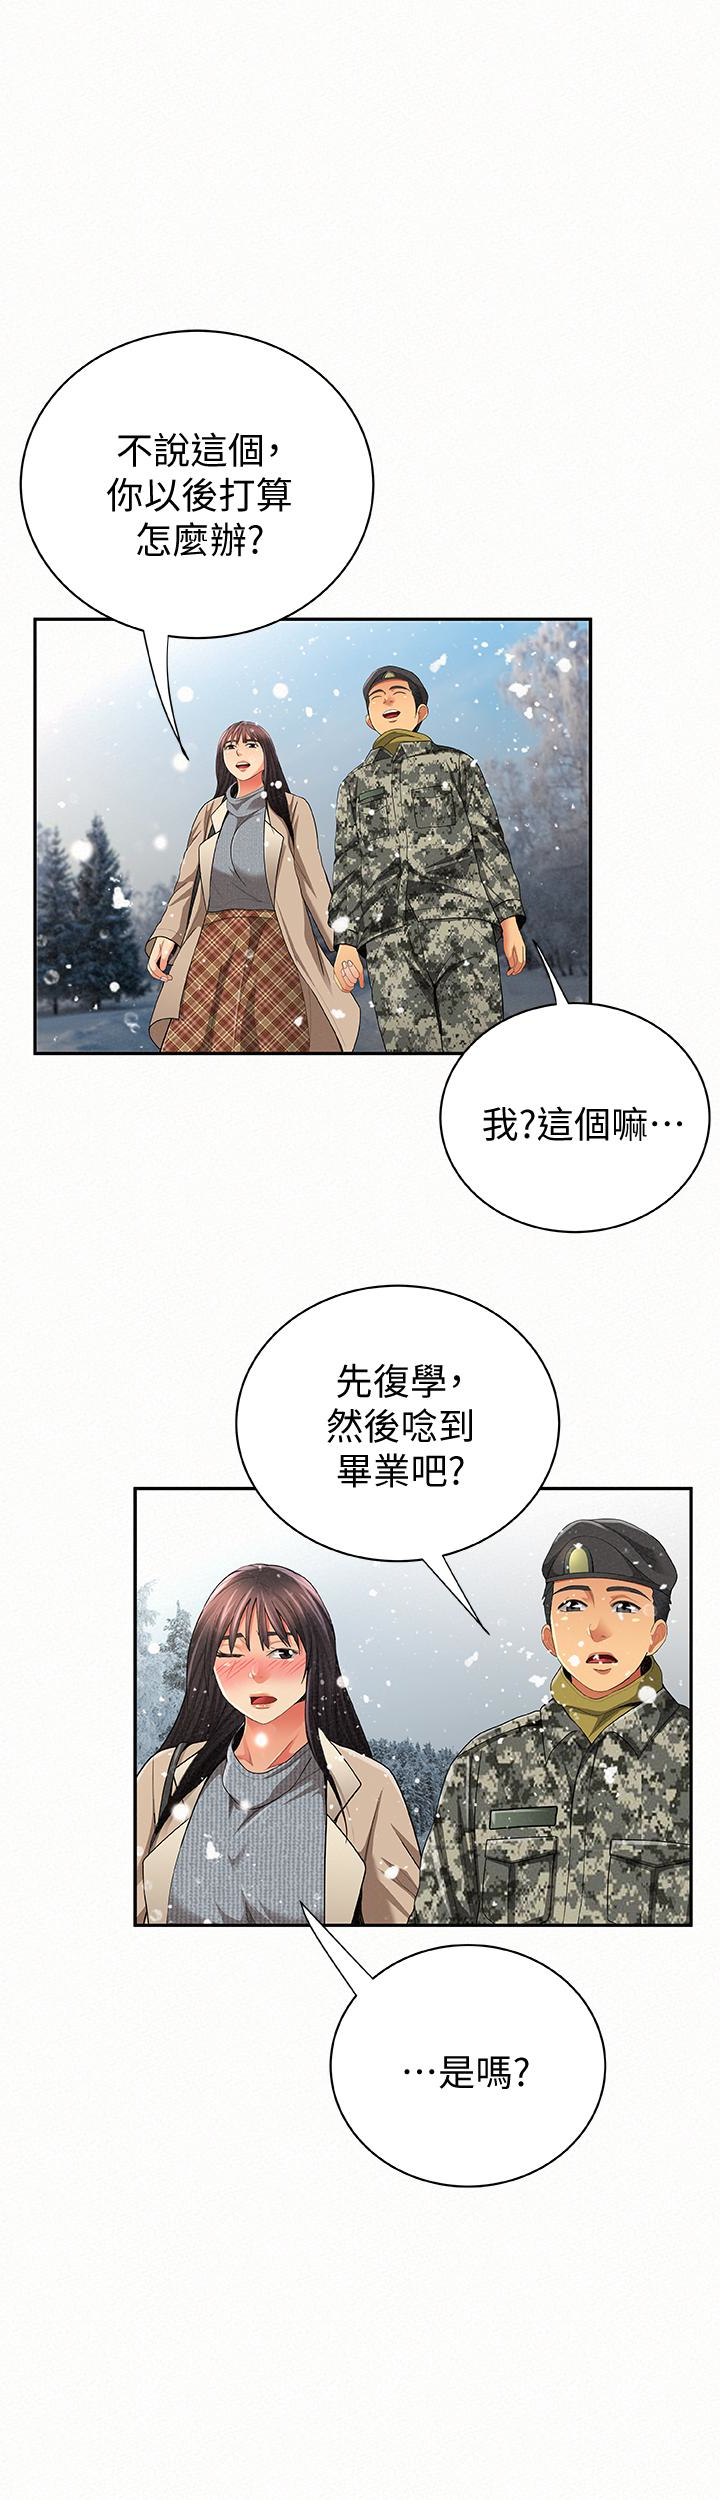 韩国污漫画 報告夫人 最终话-漫长军人生活的尽头 37